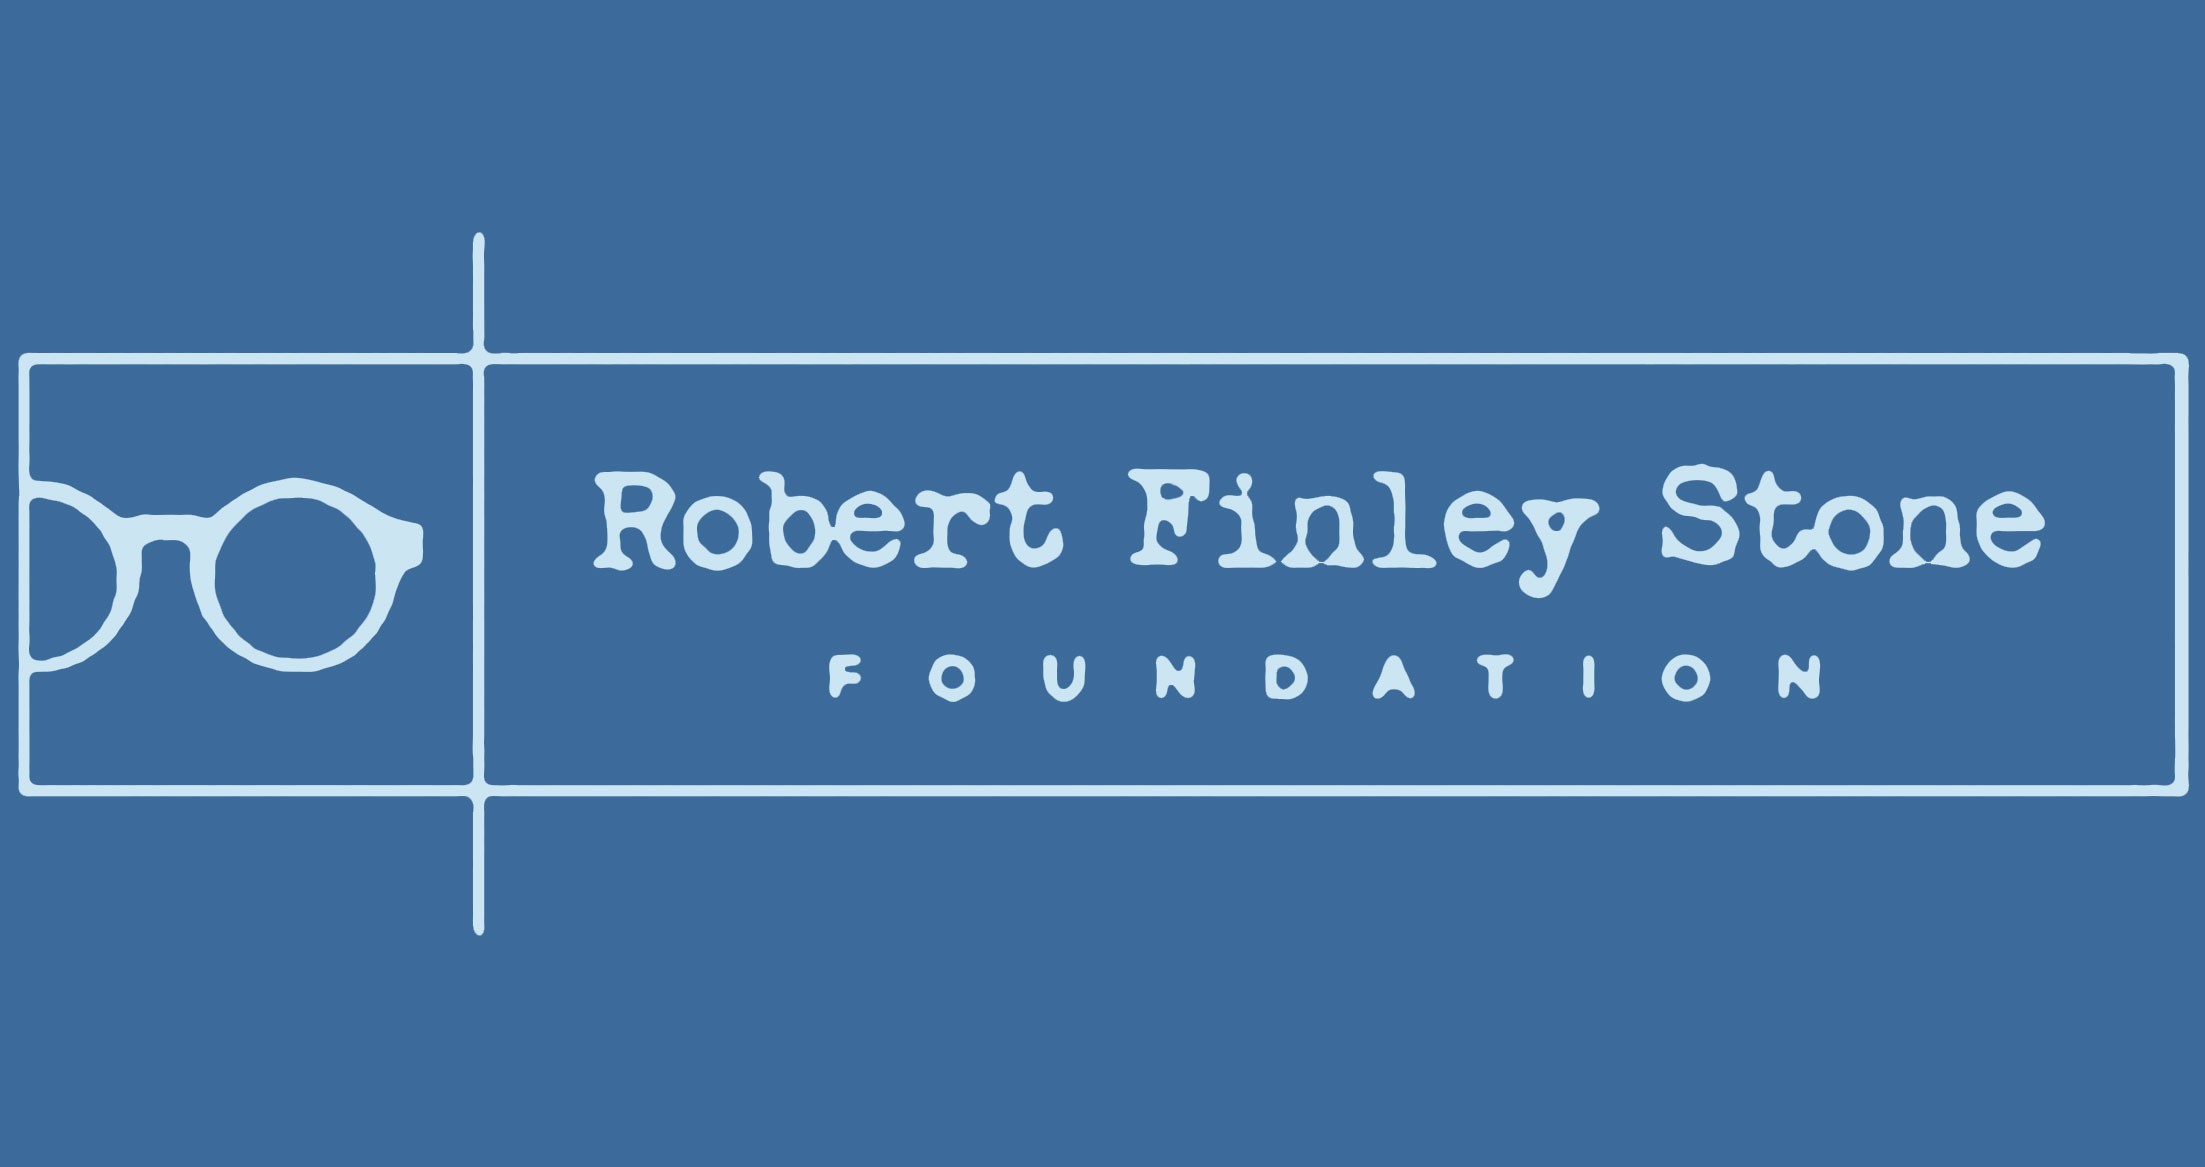 Bobby Stone Foundation